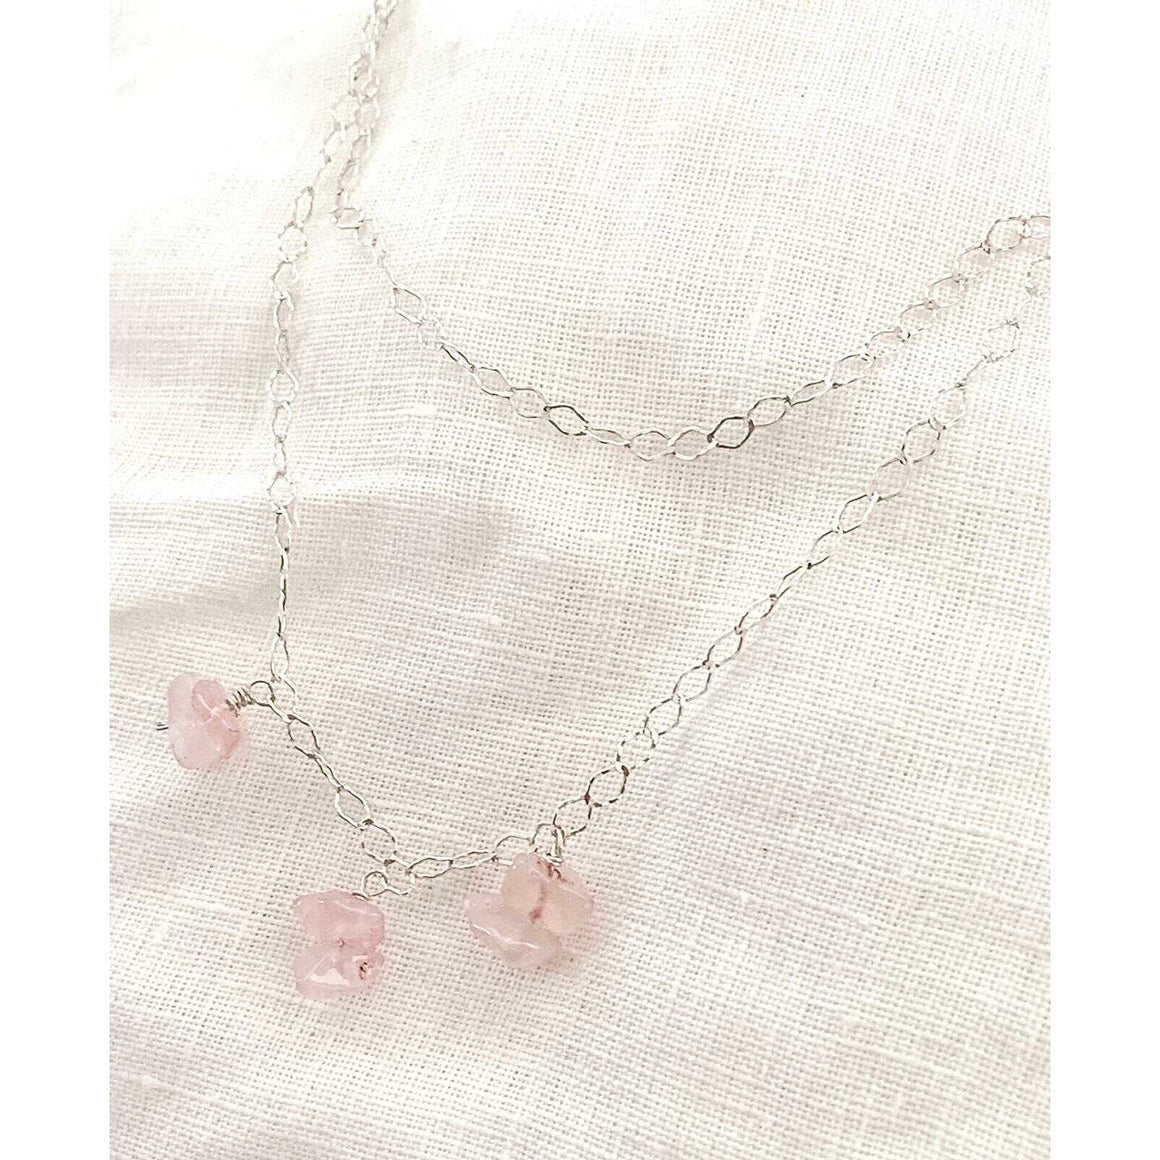 Double silver necklace with rose quartz pendants